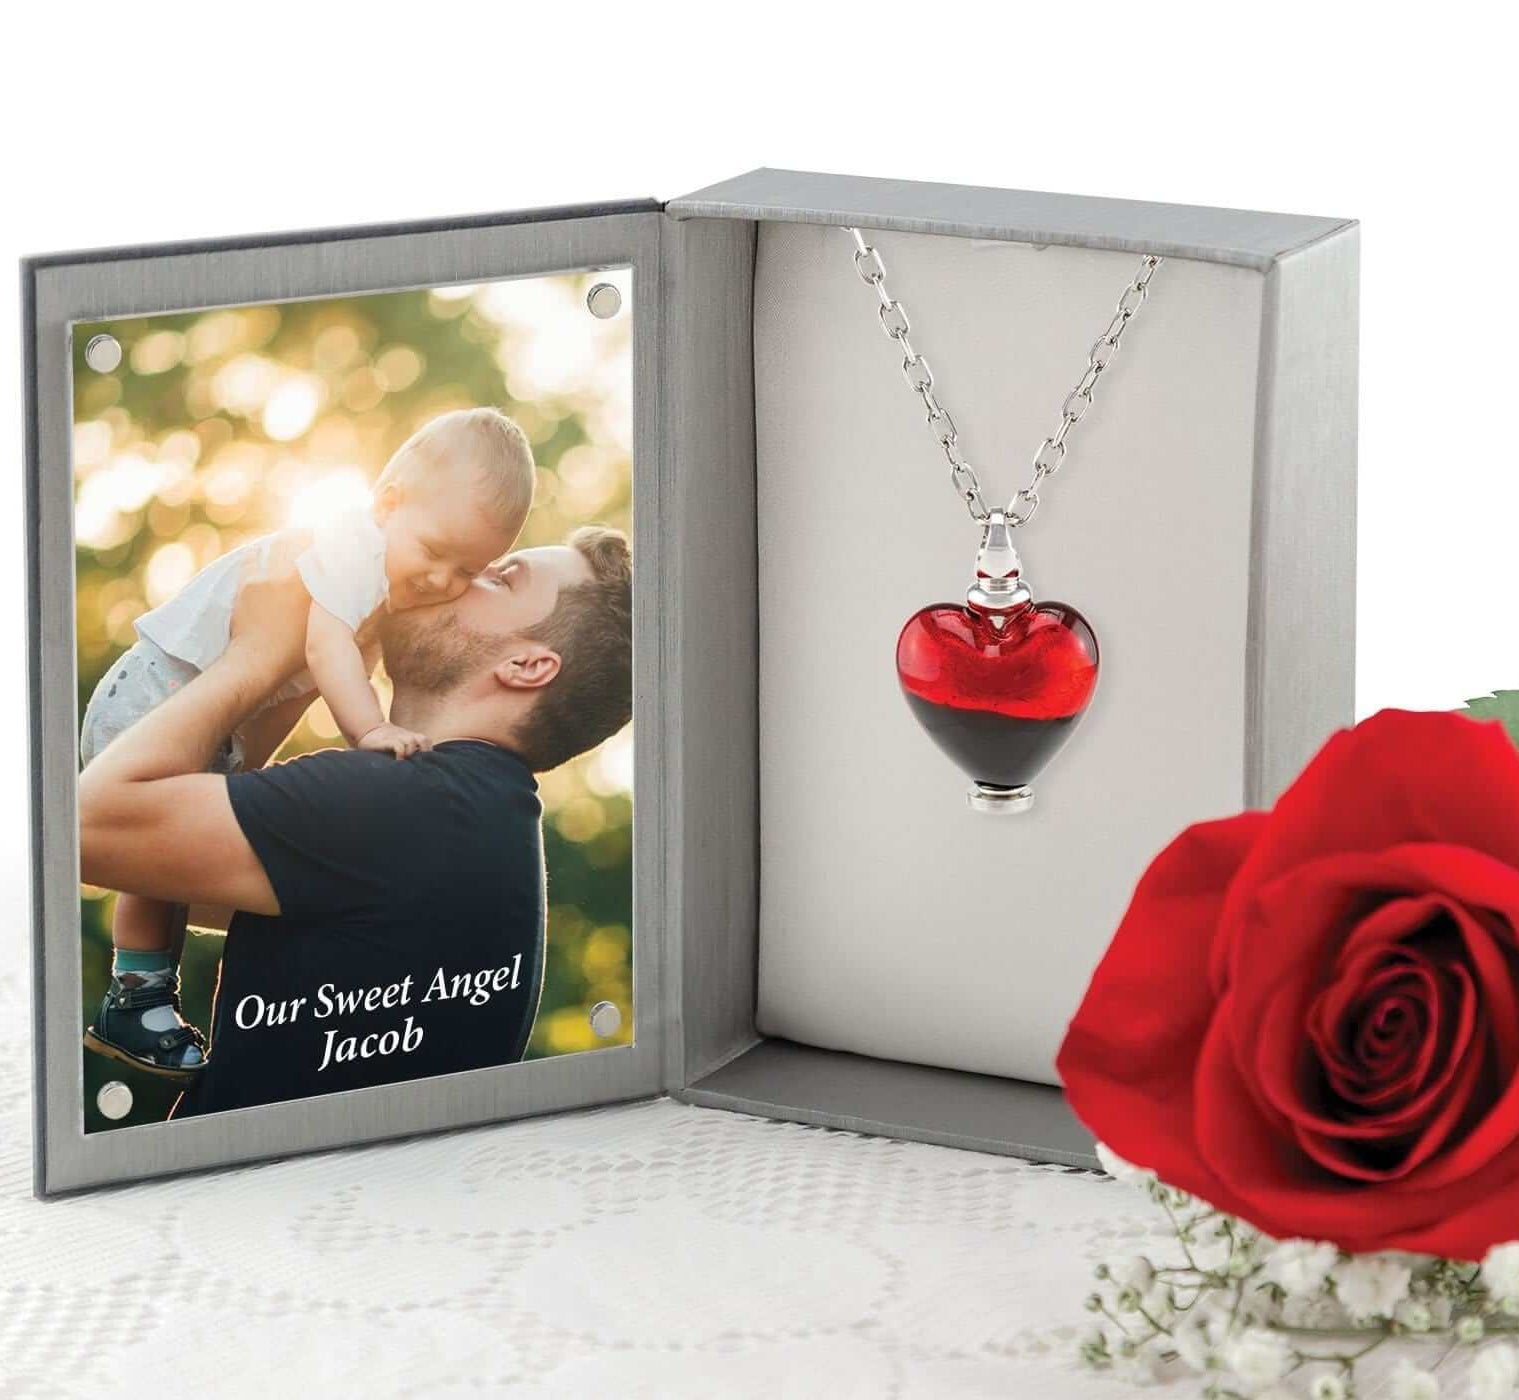 Cara Keepsakes Murano Glass Heart Urn - 'Everlasting Love' in jewelry box